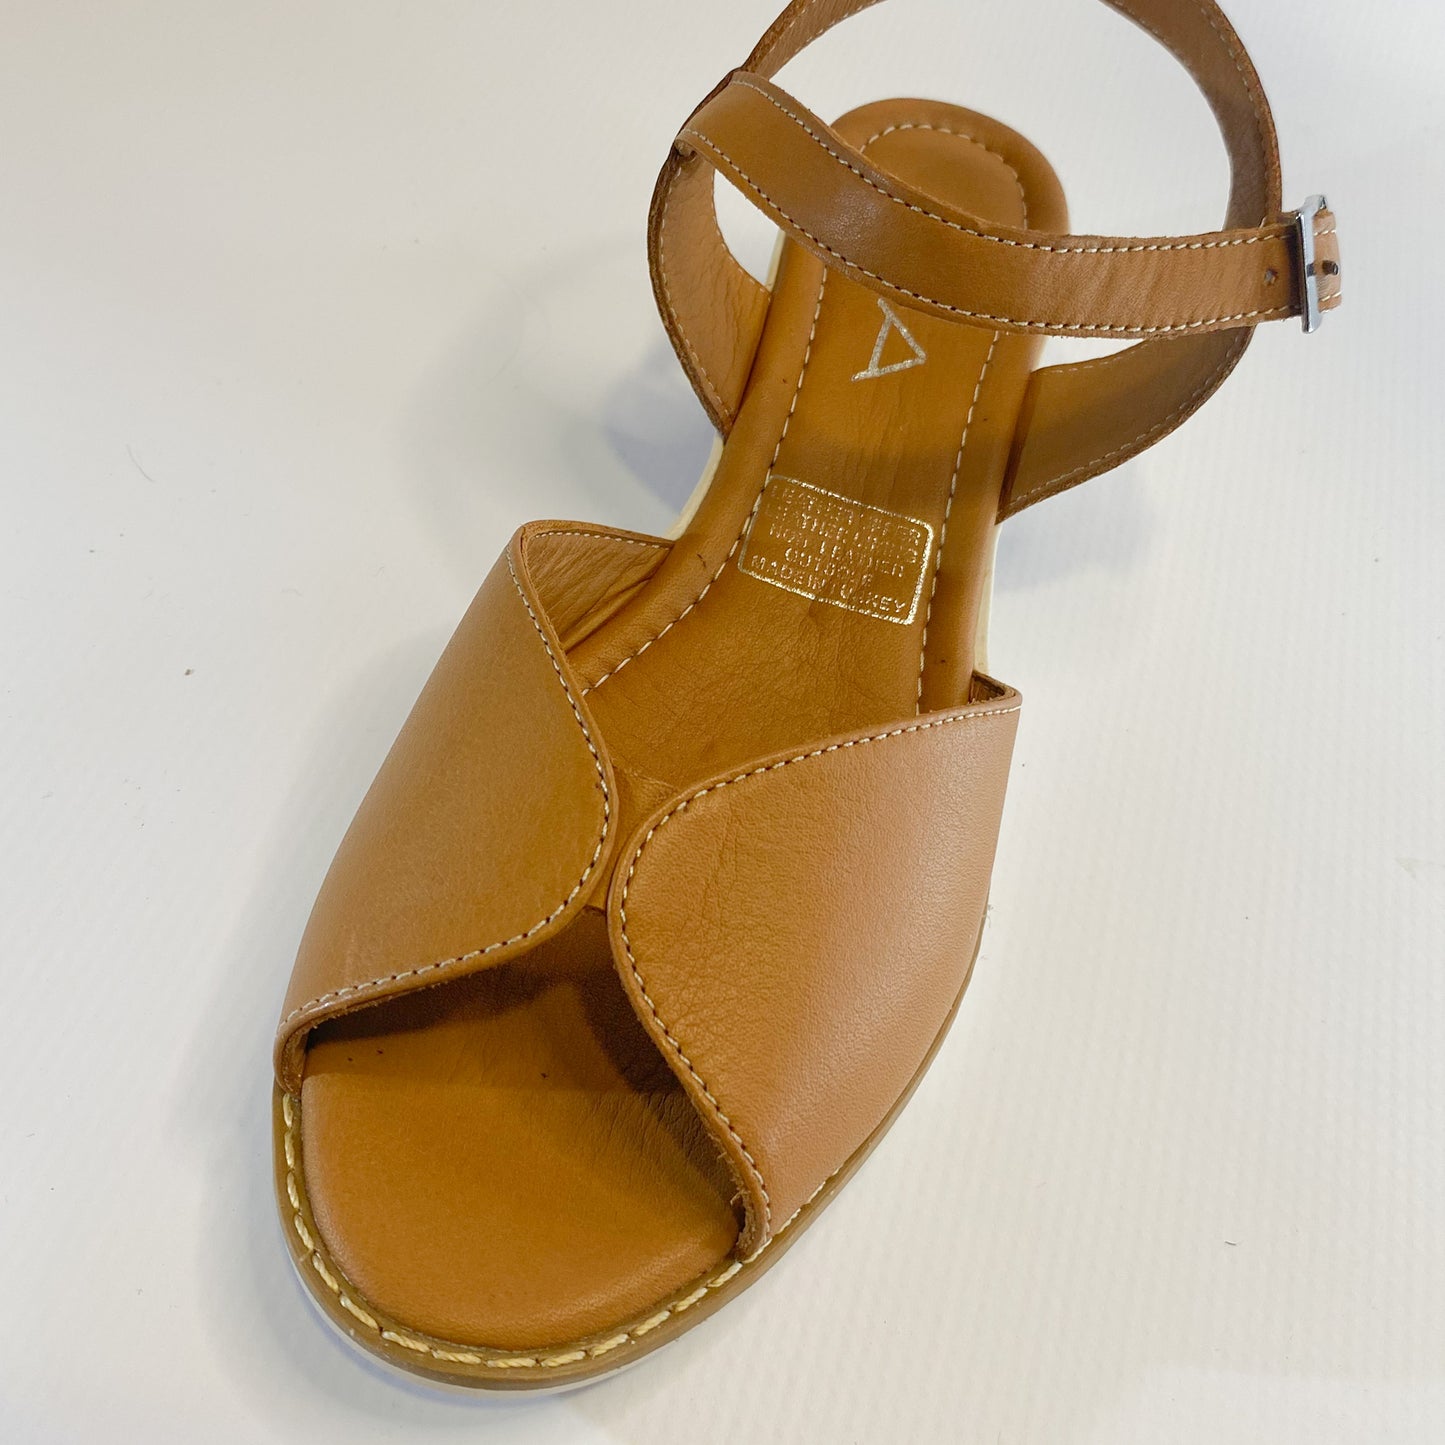 Gia tan leather wedge sandal